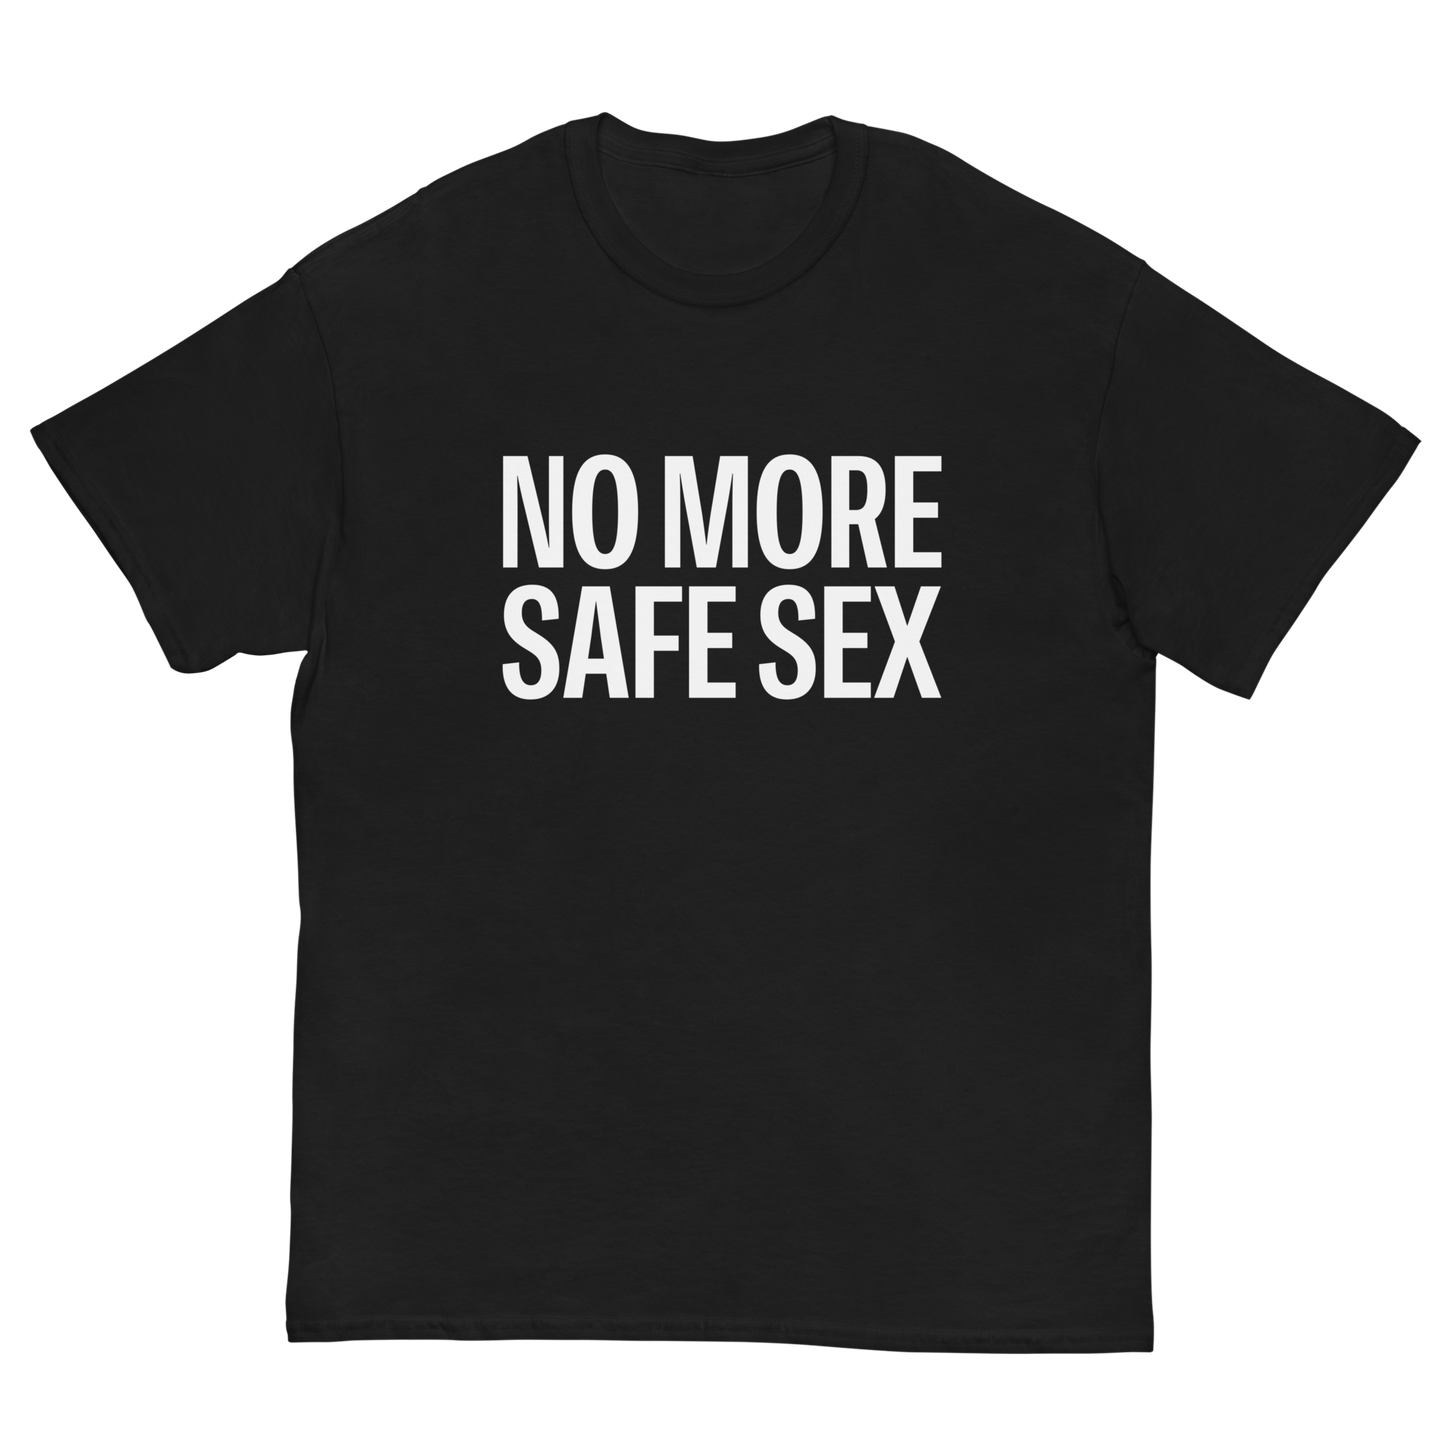 SAFE SEX T-SHIRT